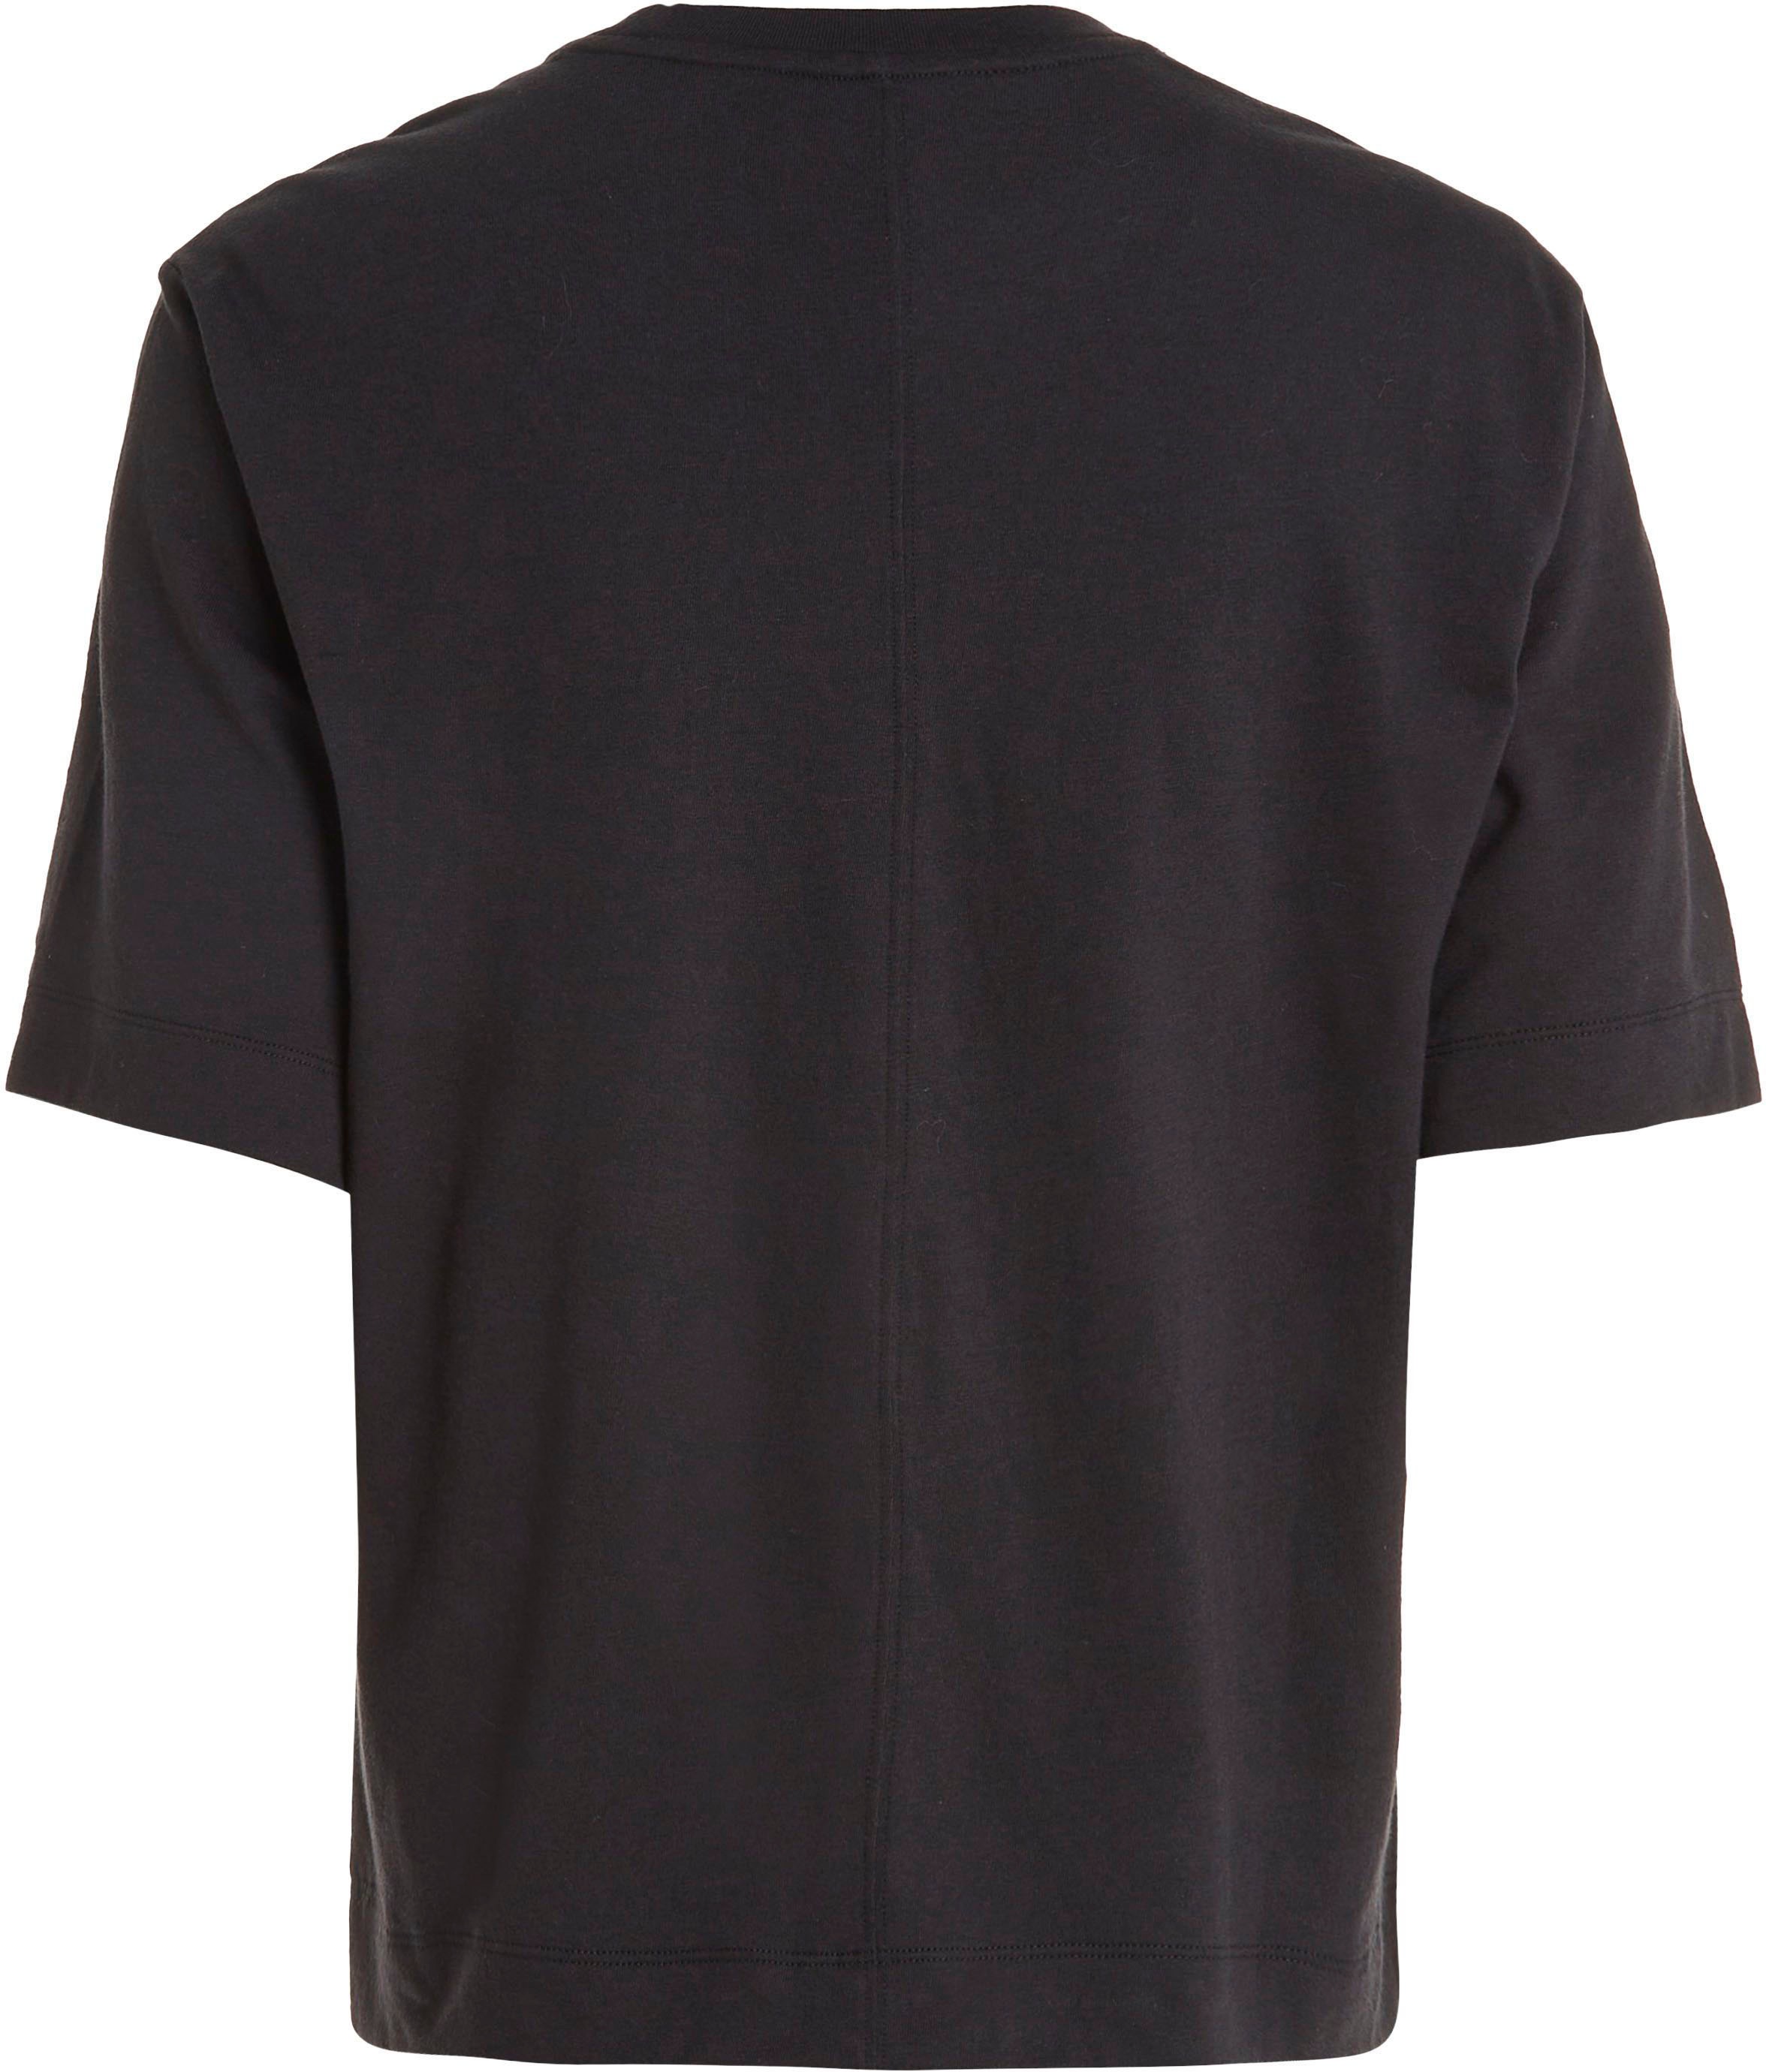 Calvin Klein Sport T-Shirt für bestellen | BAUR